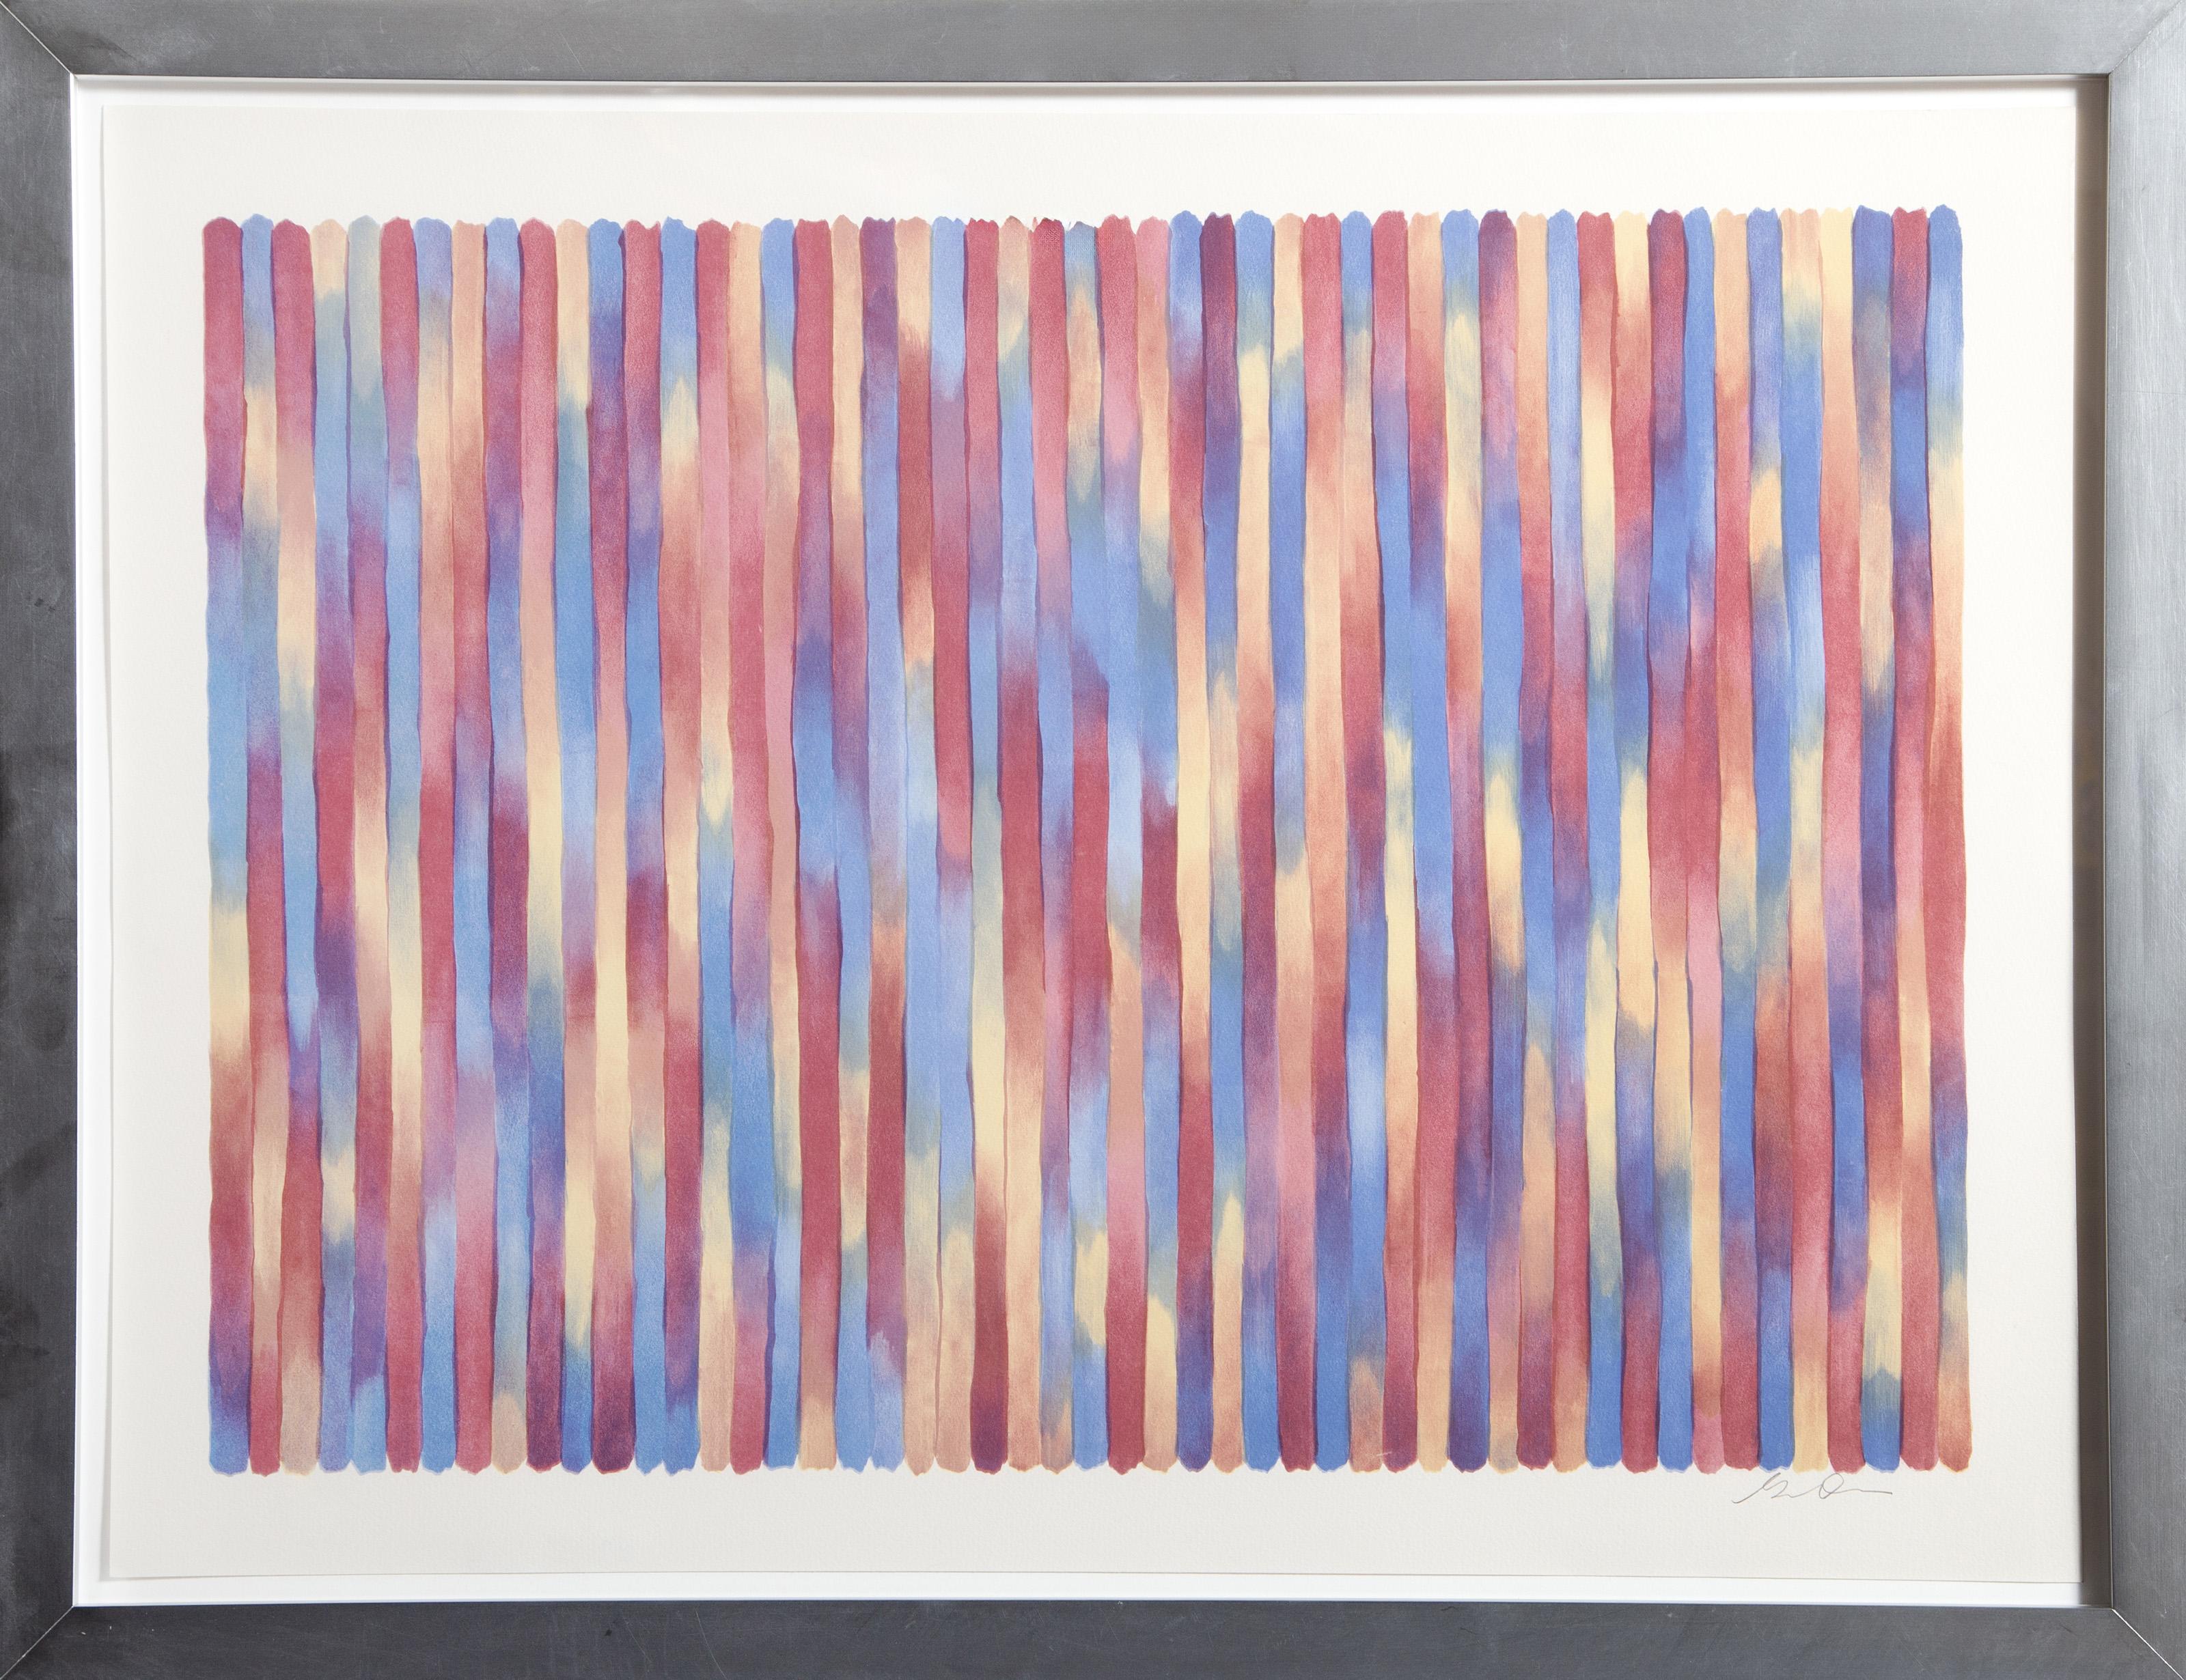 Ce tirage illustre les captivantes compositions Color Field de Gene Davis, composées de lignes verticales et de couleurs changeantes. Alternant du bleu au jaune puis au rouge, les bandes verticales divisent chaque section en pistes de couleurs